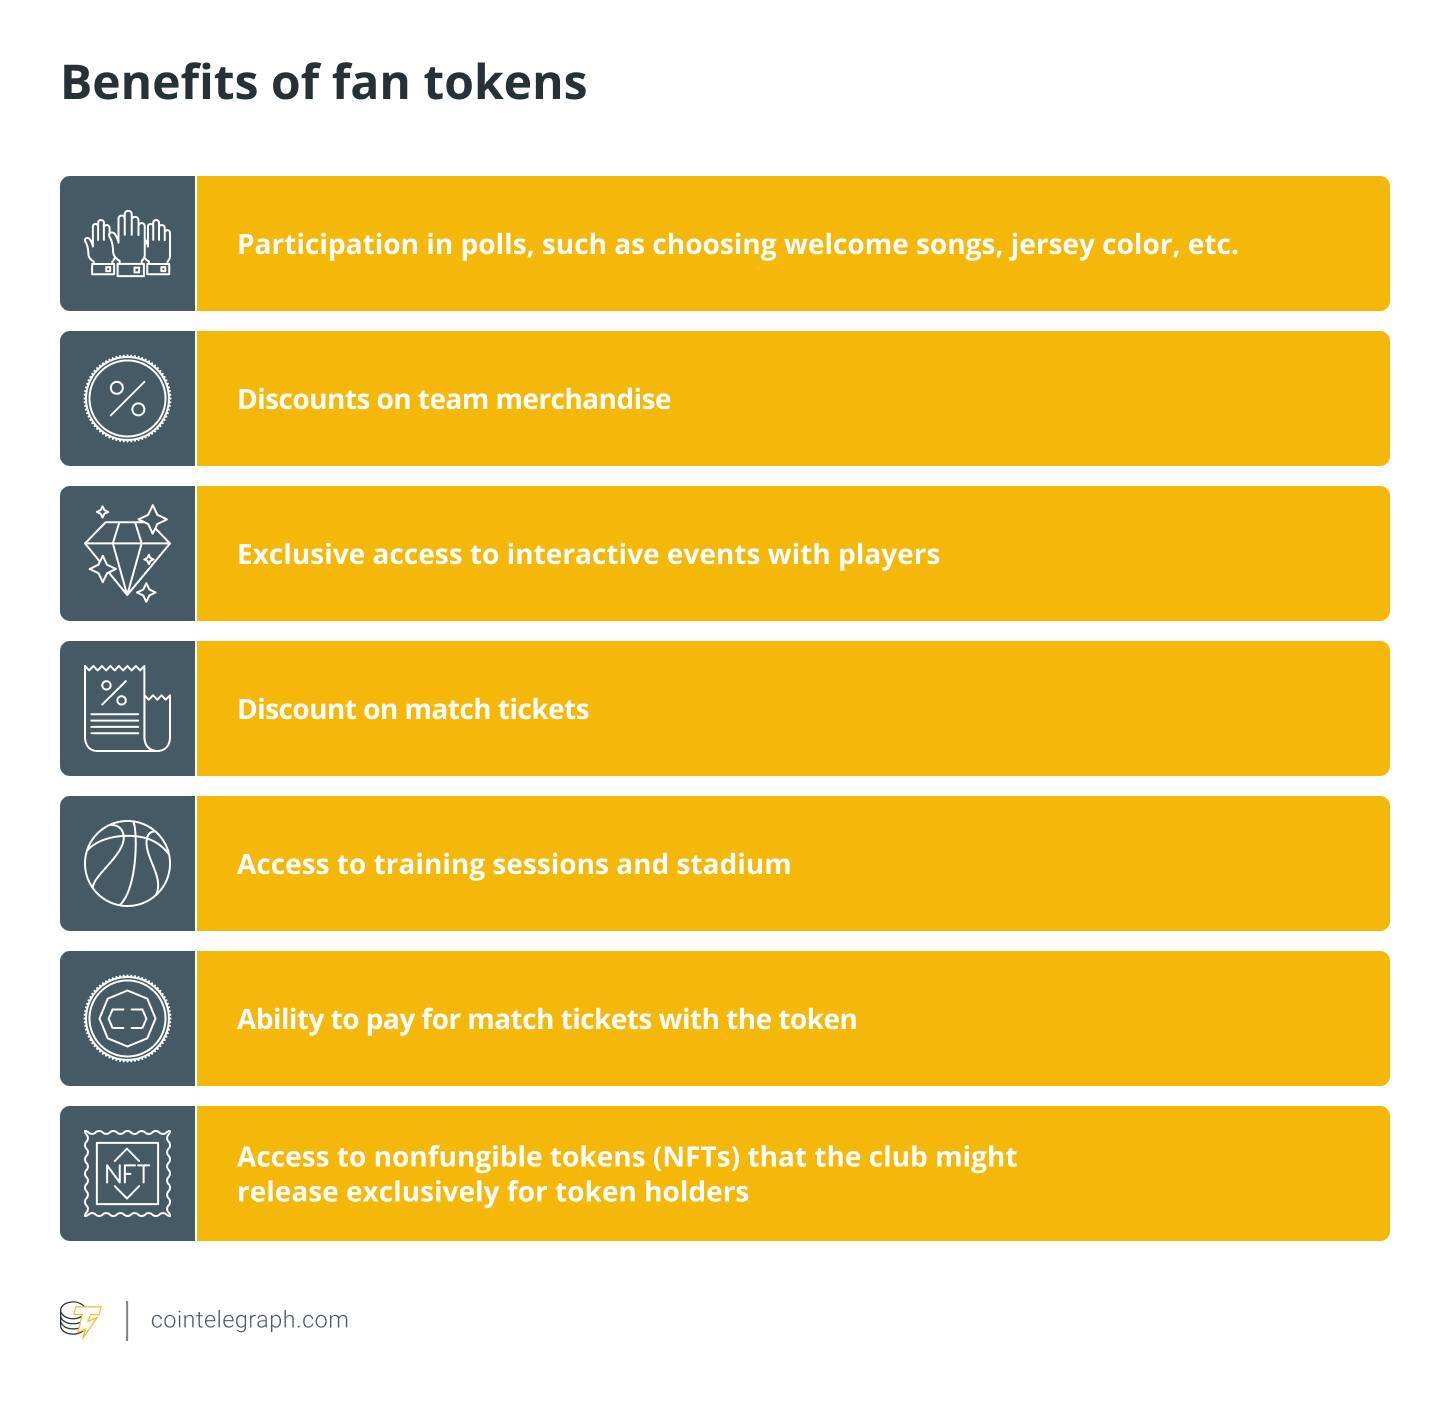 Benefits of fan tokens